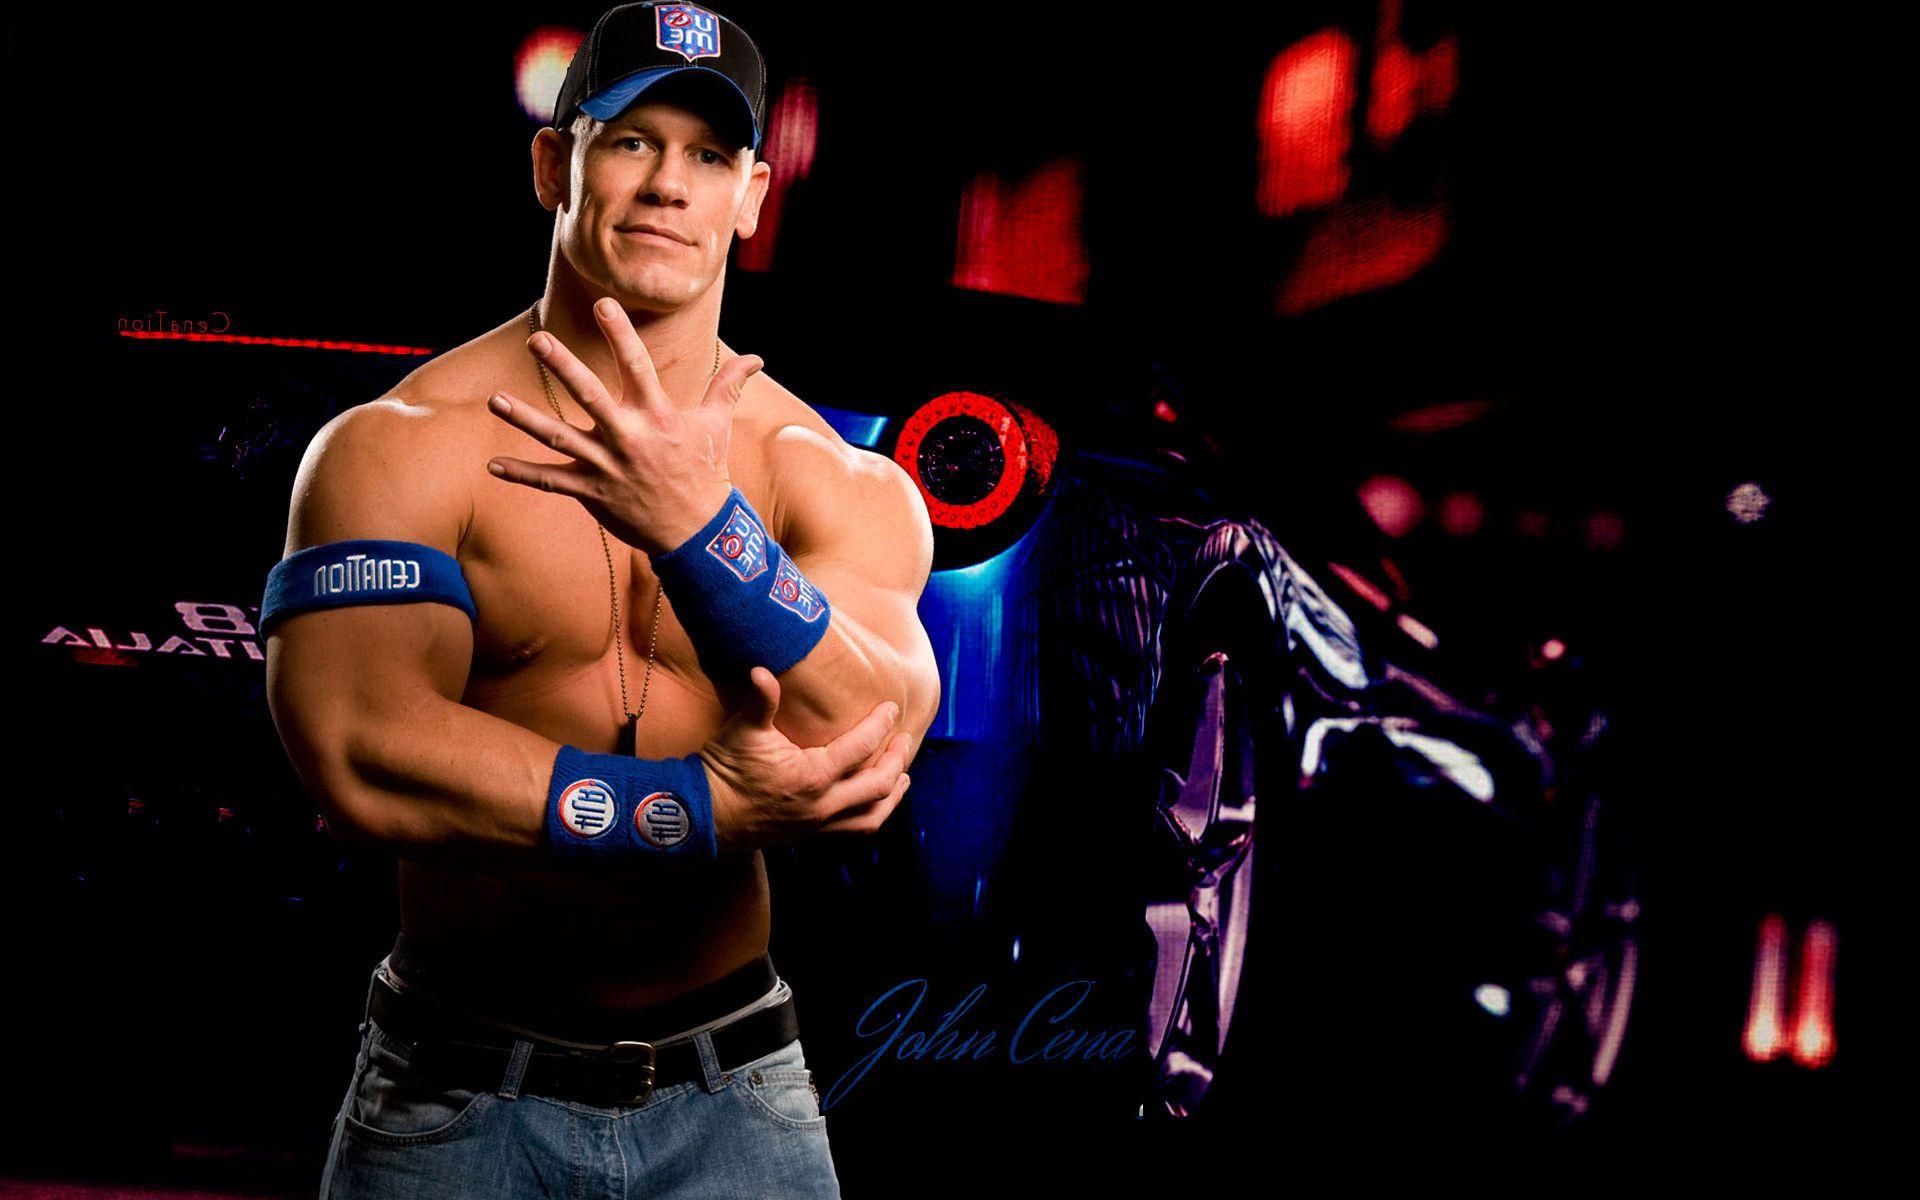 John Cena Wallpapers - Top Free John Cena Backgrounds - WallpaperAccess